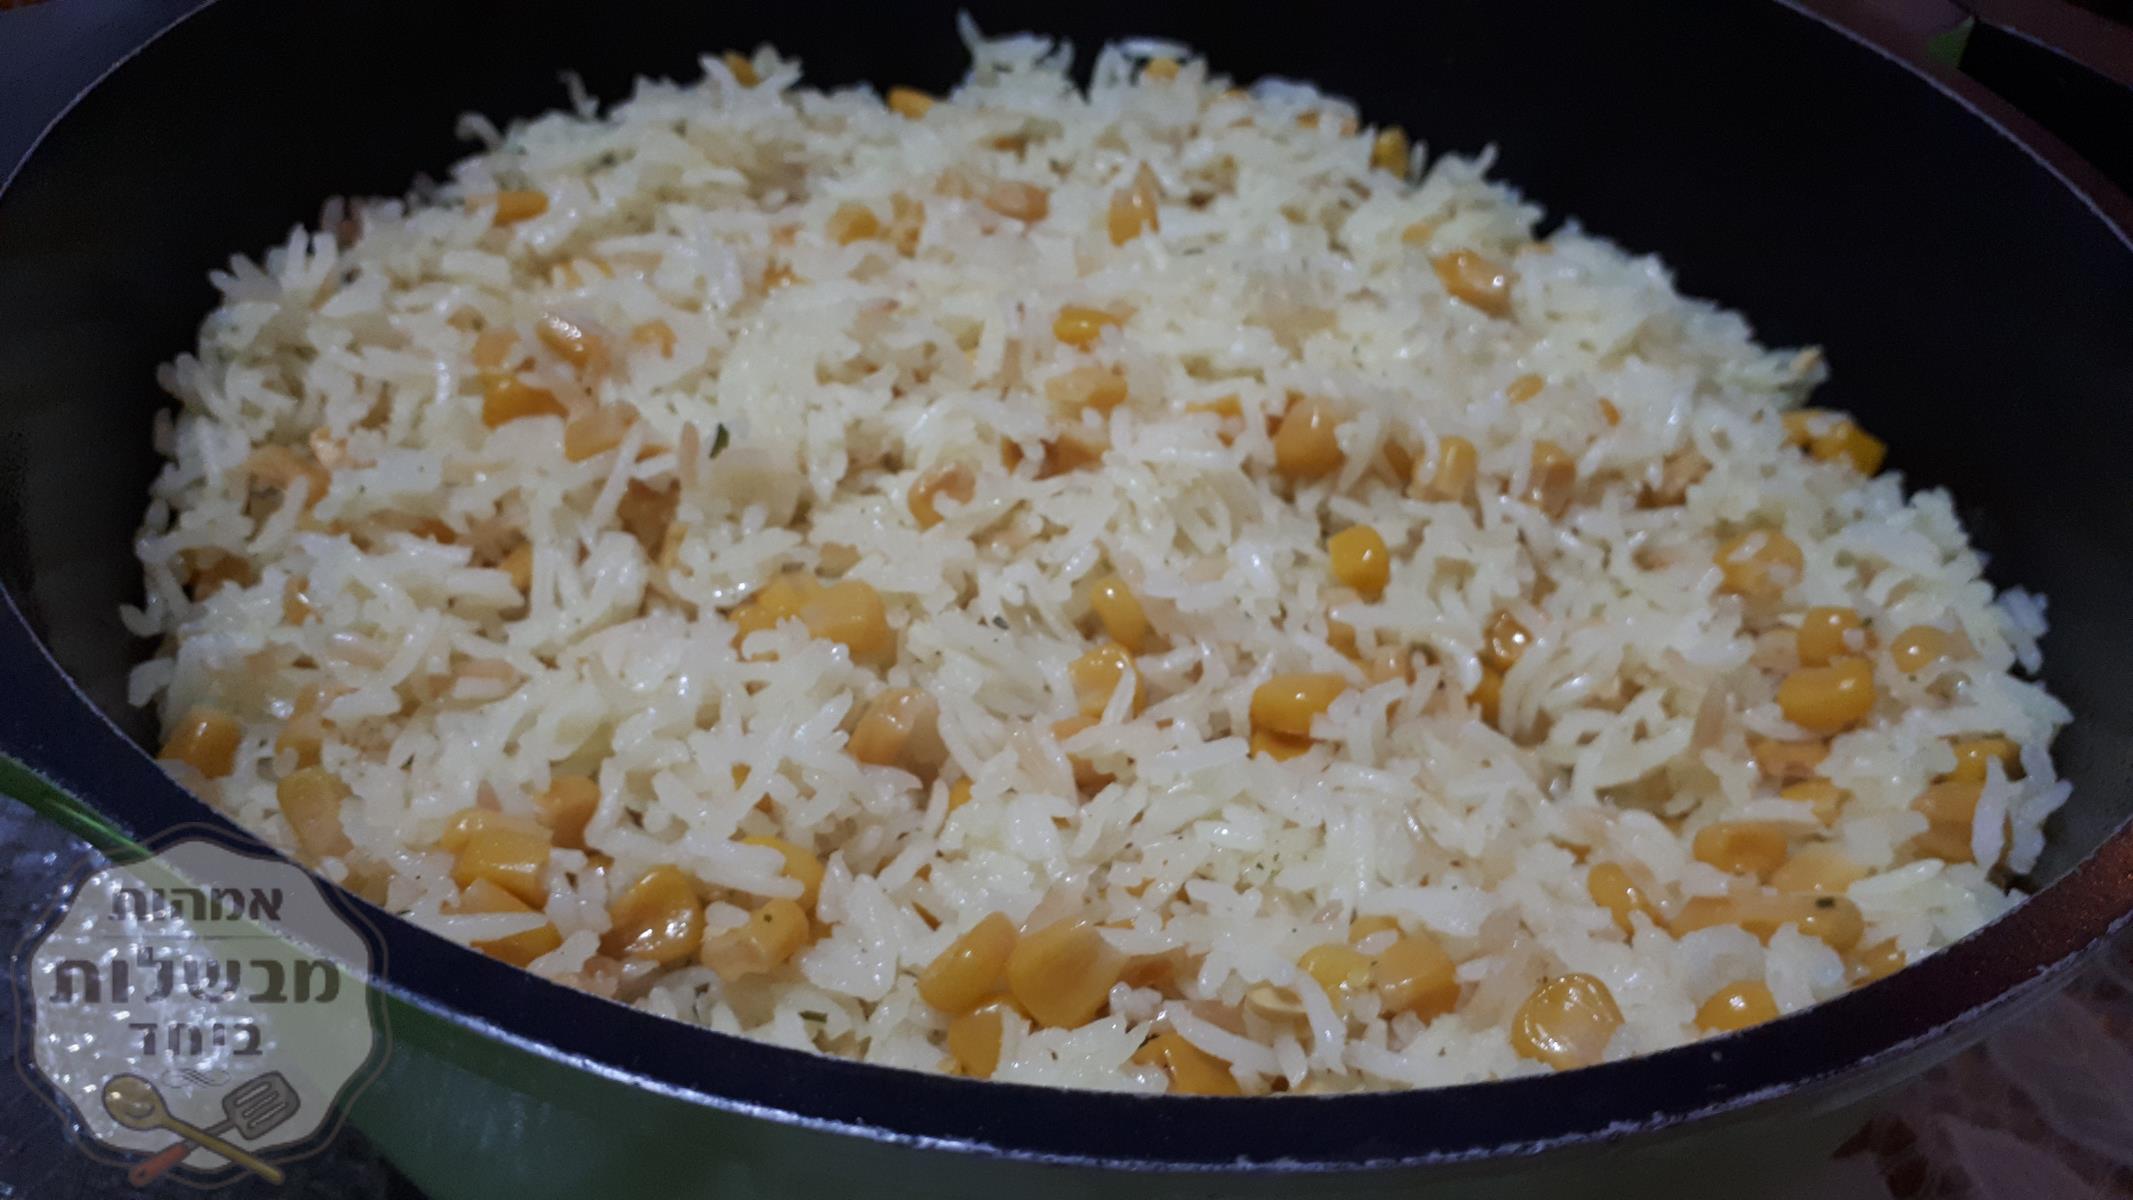 אורז אחד אחד עם תירס